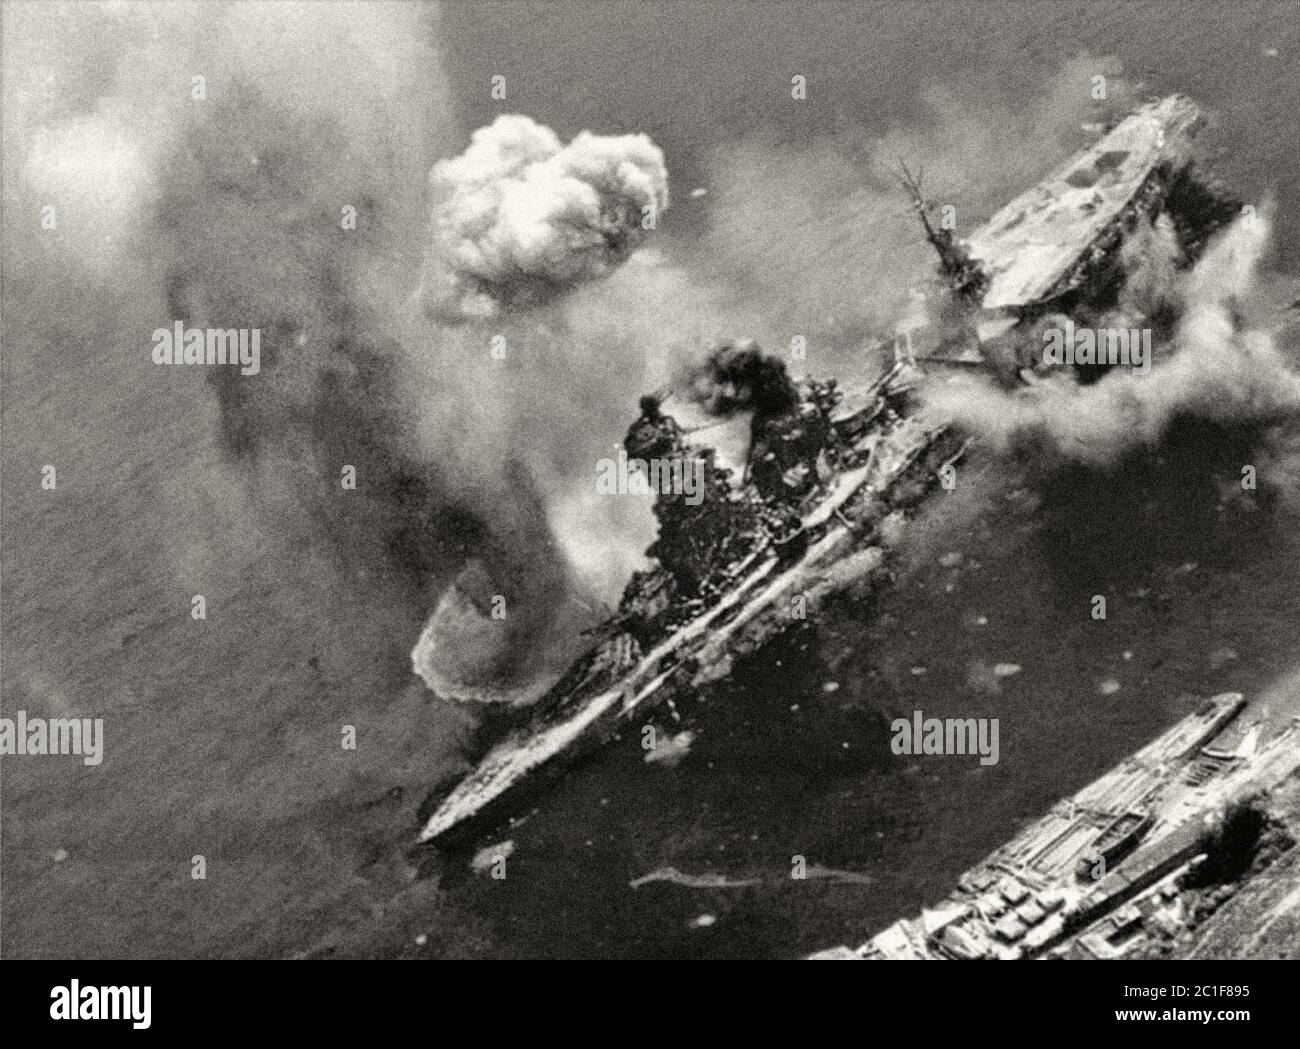 L'immagine mostra la rottura di una bomba americana vicino al lato tribordo della corazzata giapponese ISE, ricostruita in un portaerei. Kure, J. Foto Stock